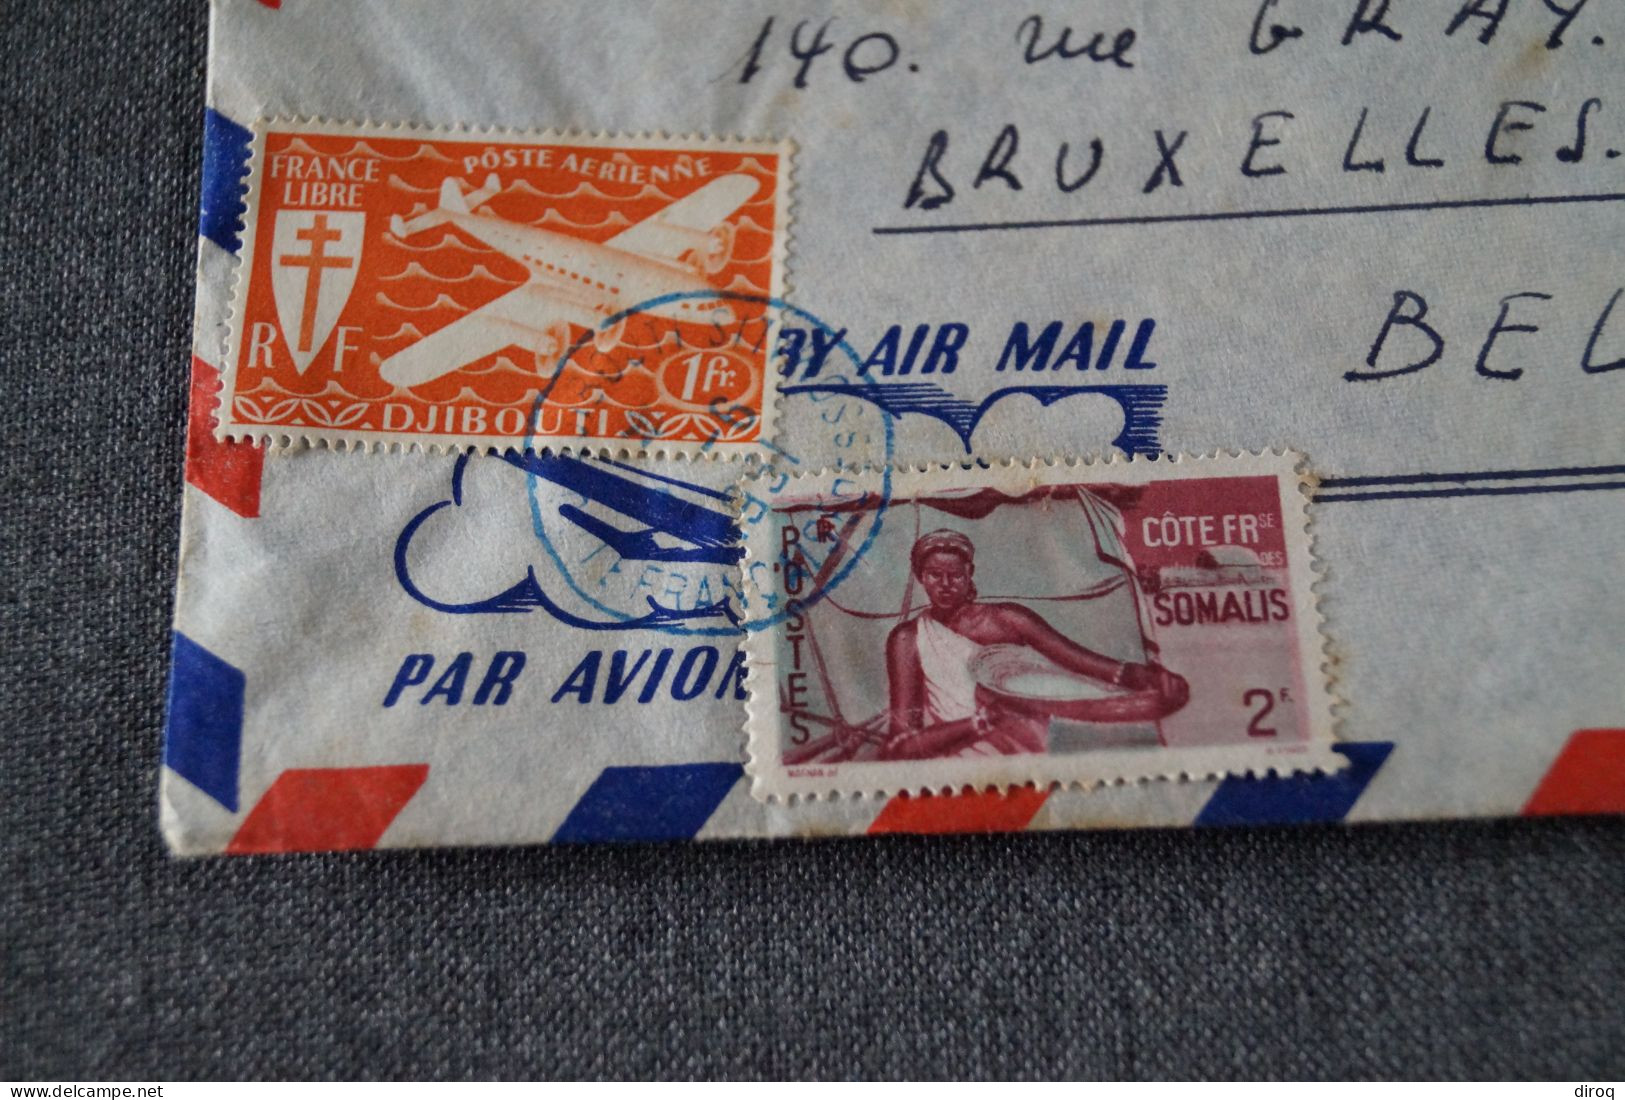 Très Bel Envoi Colonie Française,Djibouti - Belgique,1951courrier, Pour Collection - Ethiopia